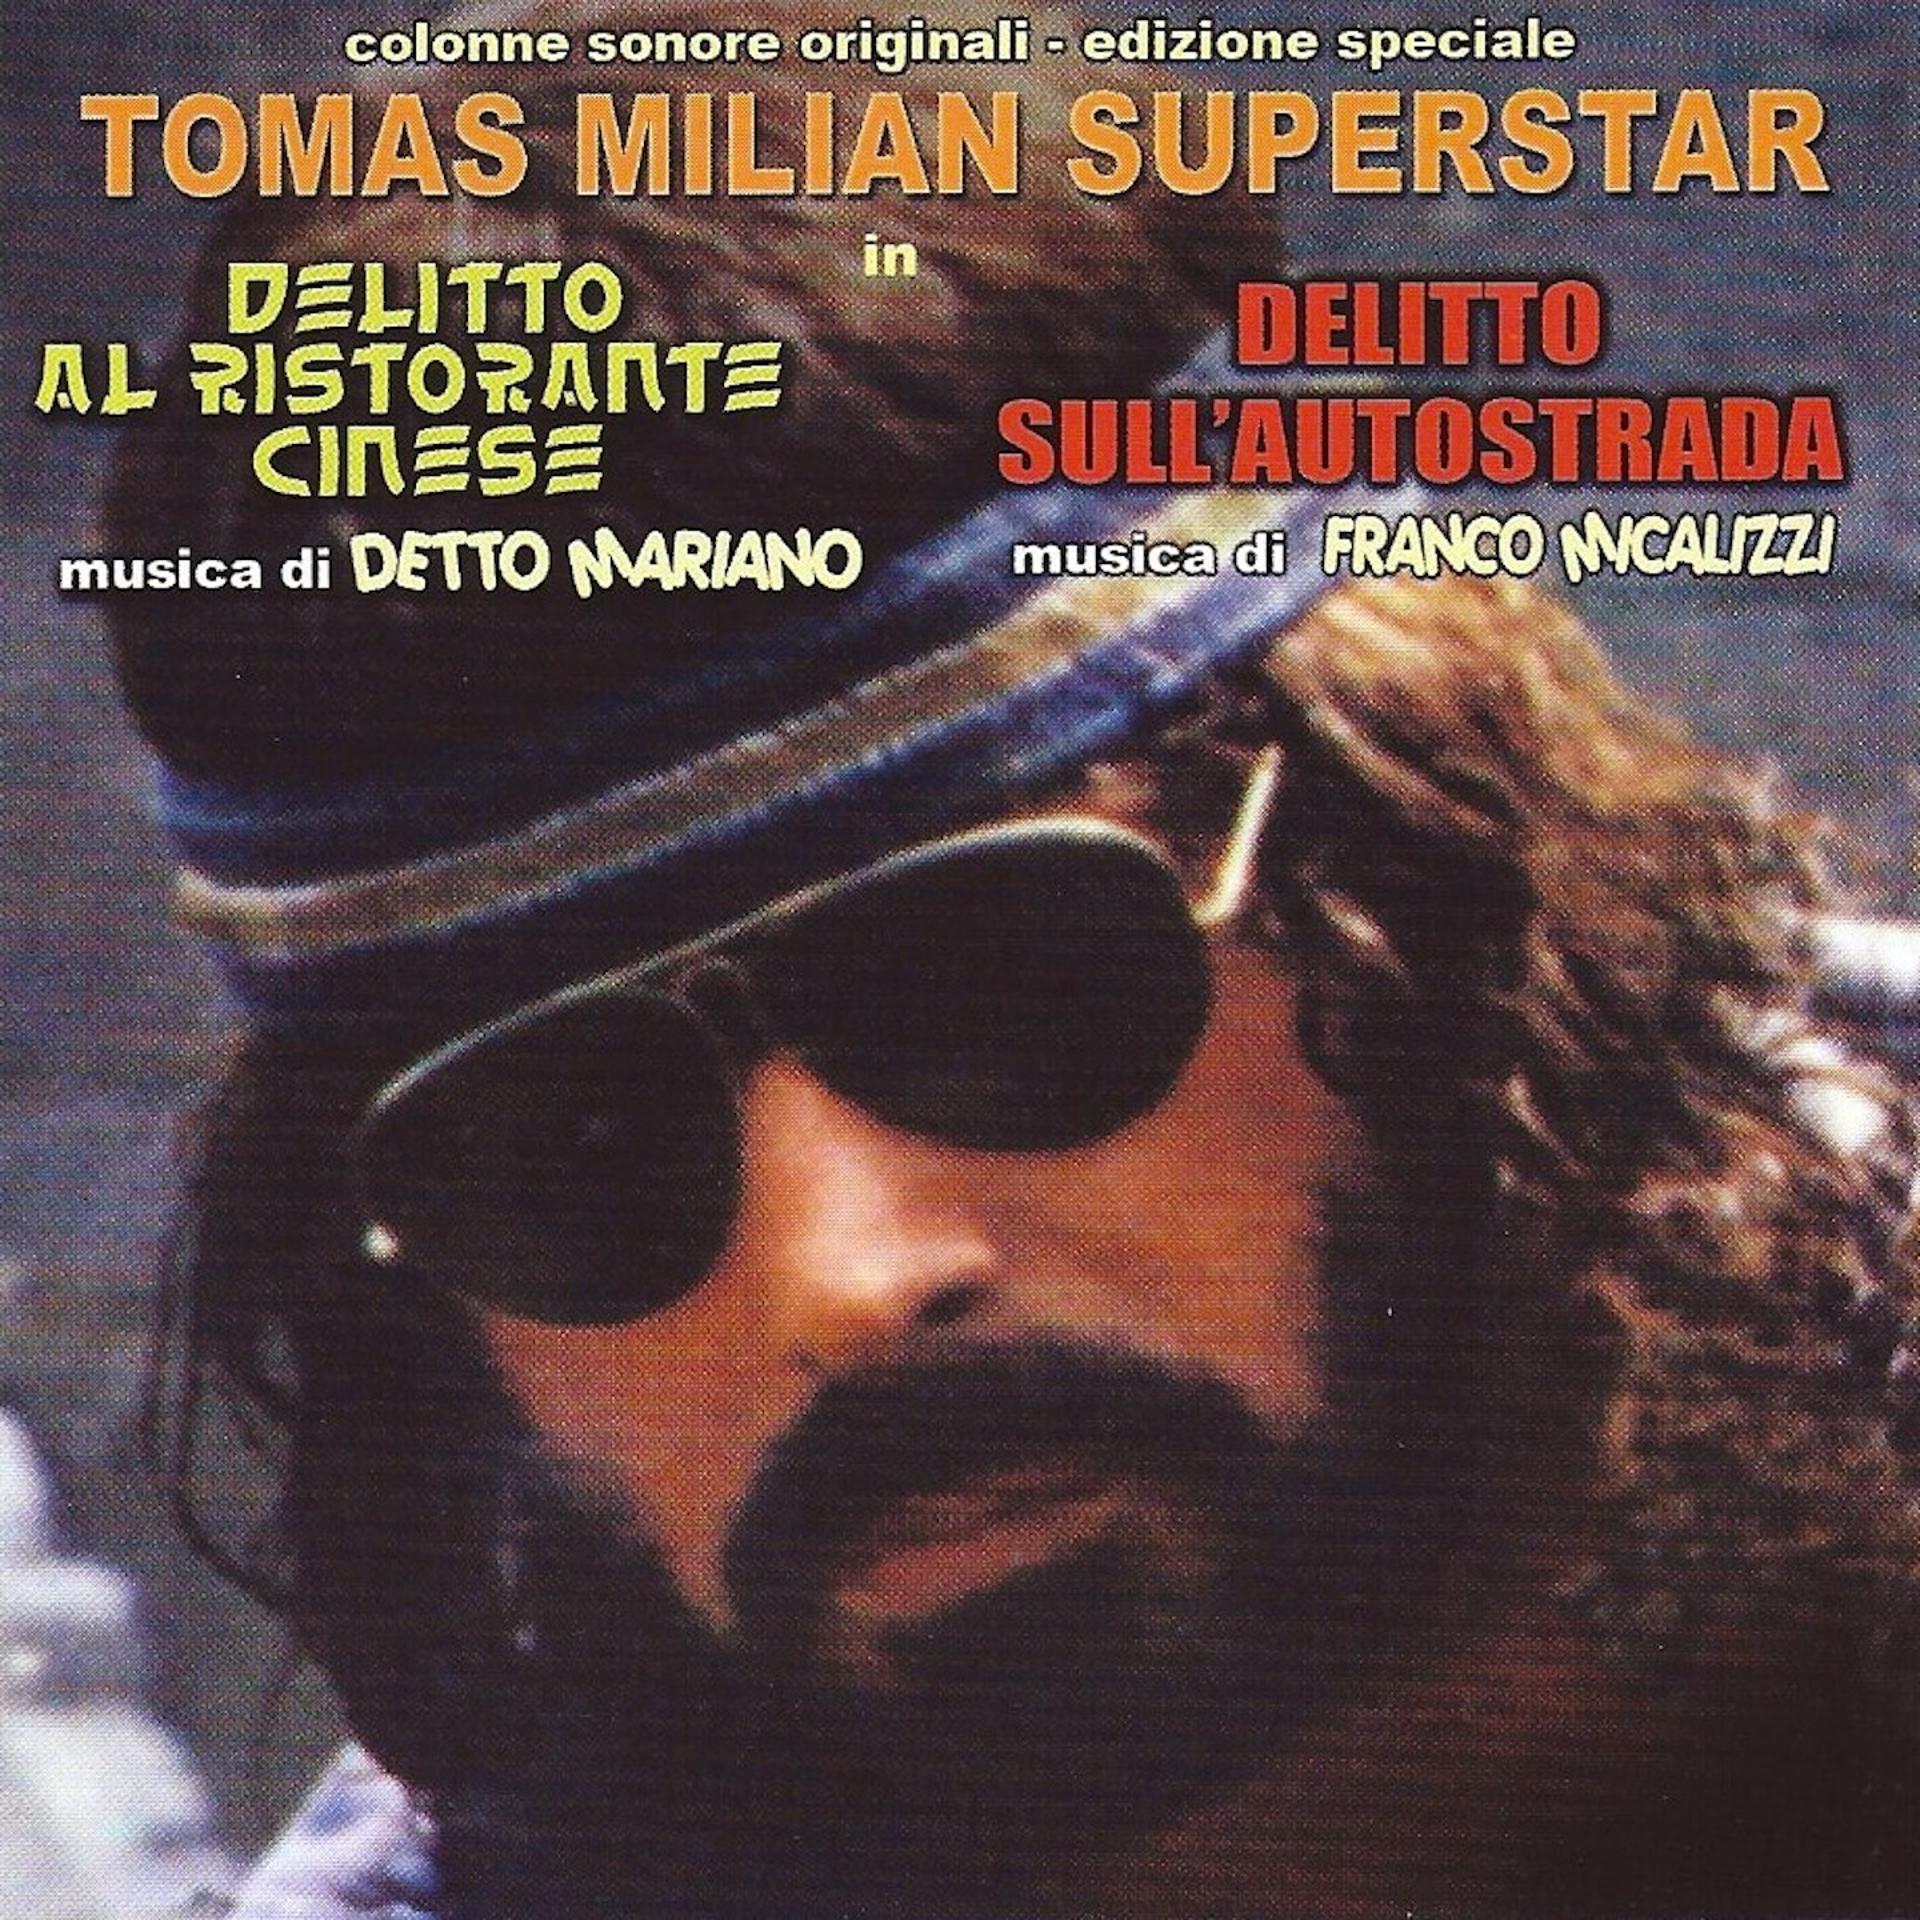 Постер альбома Tomas Milian Superstar - Delitto al ristorante cinese / Delitto sull'autostrada